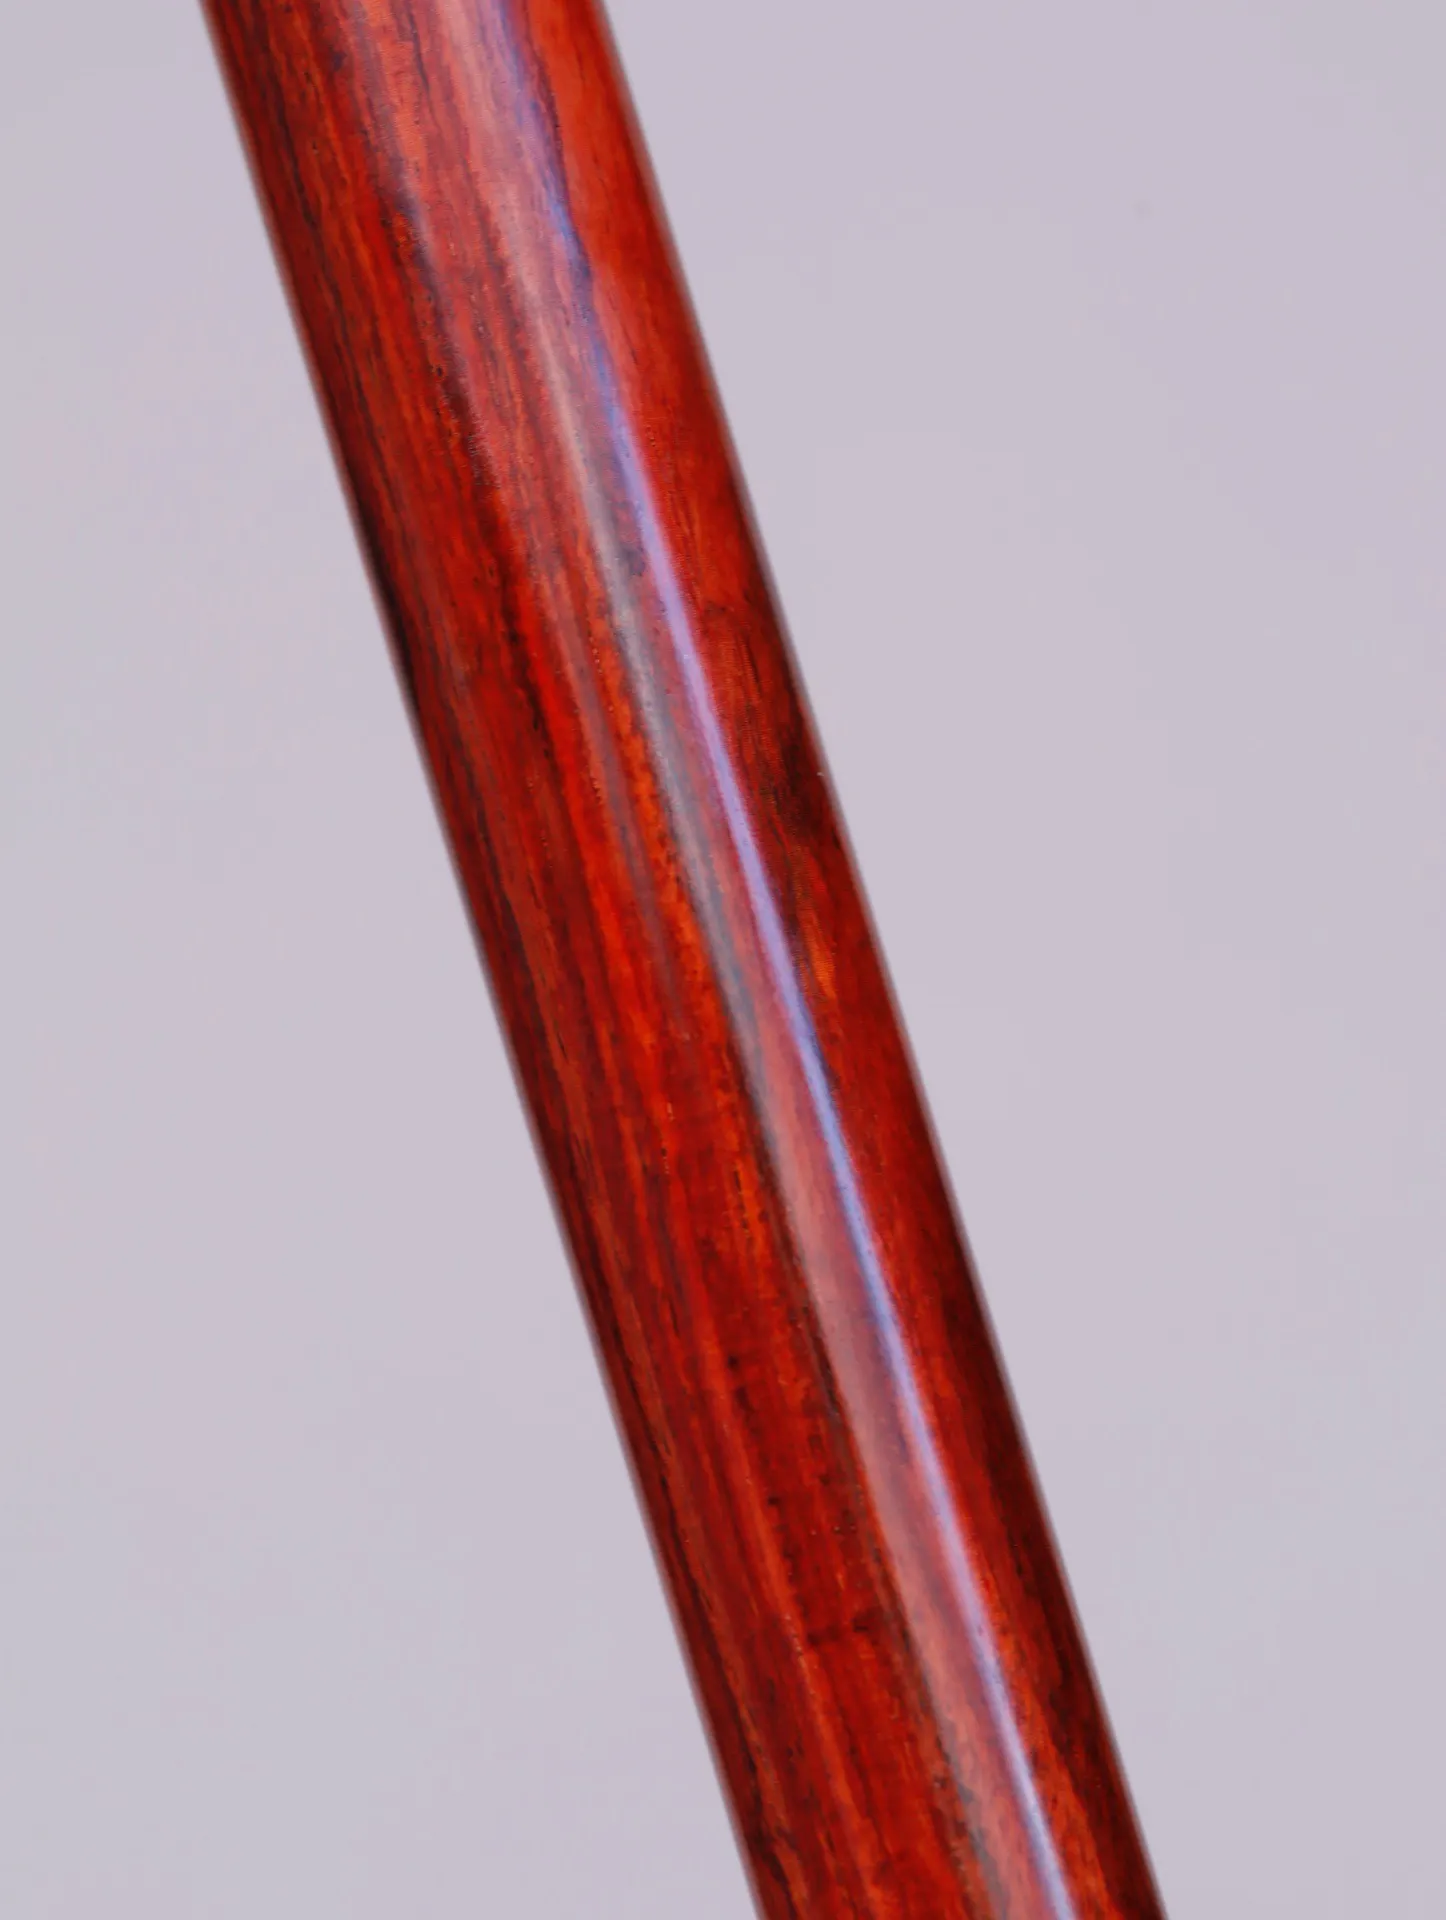 紫檀黄铜·如意金箍棒

规格:120*3*3cm ，重4.3斤